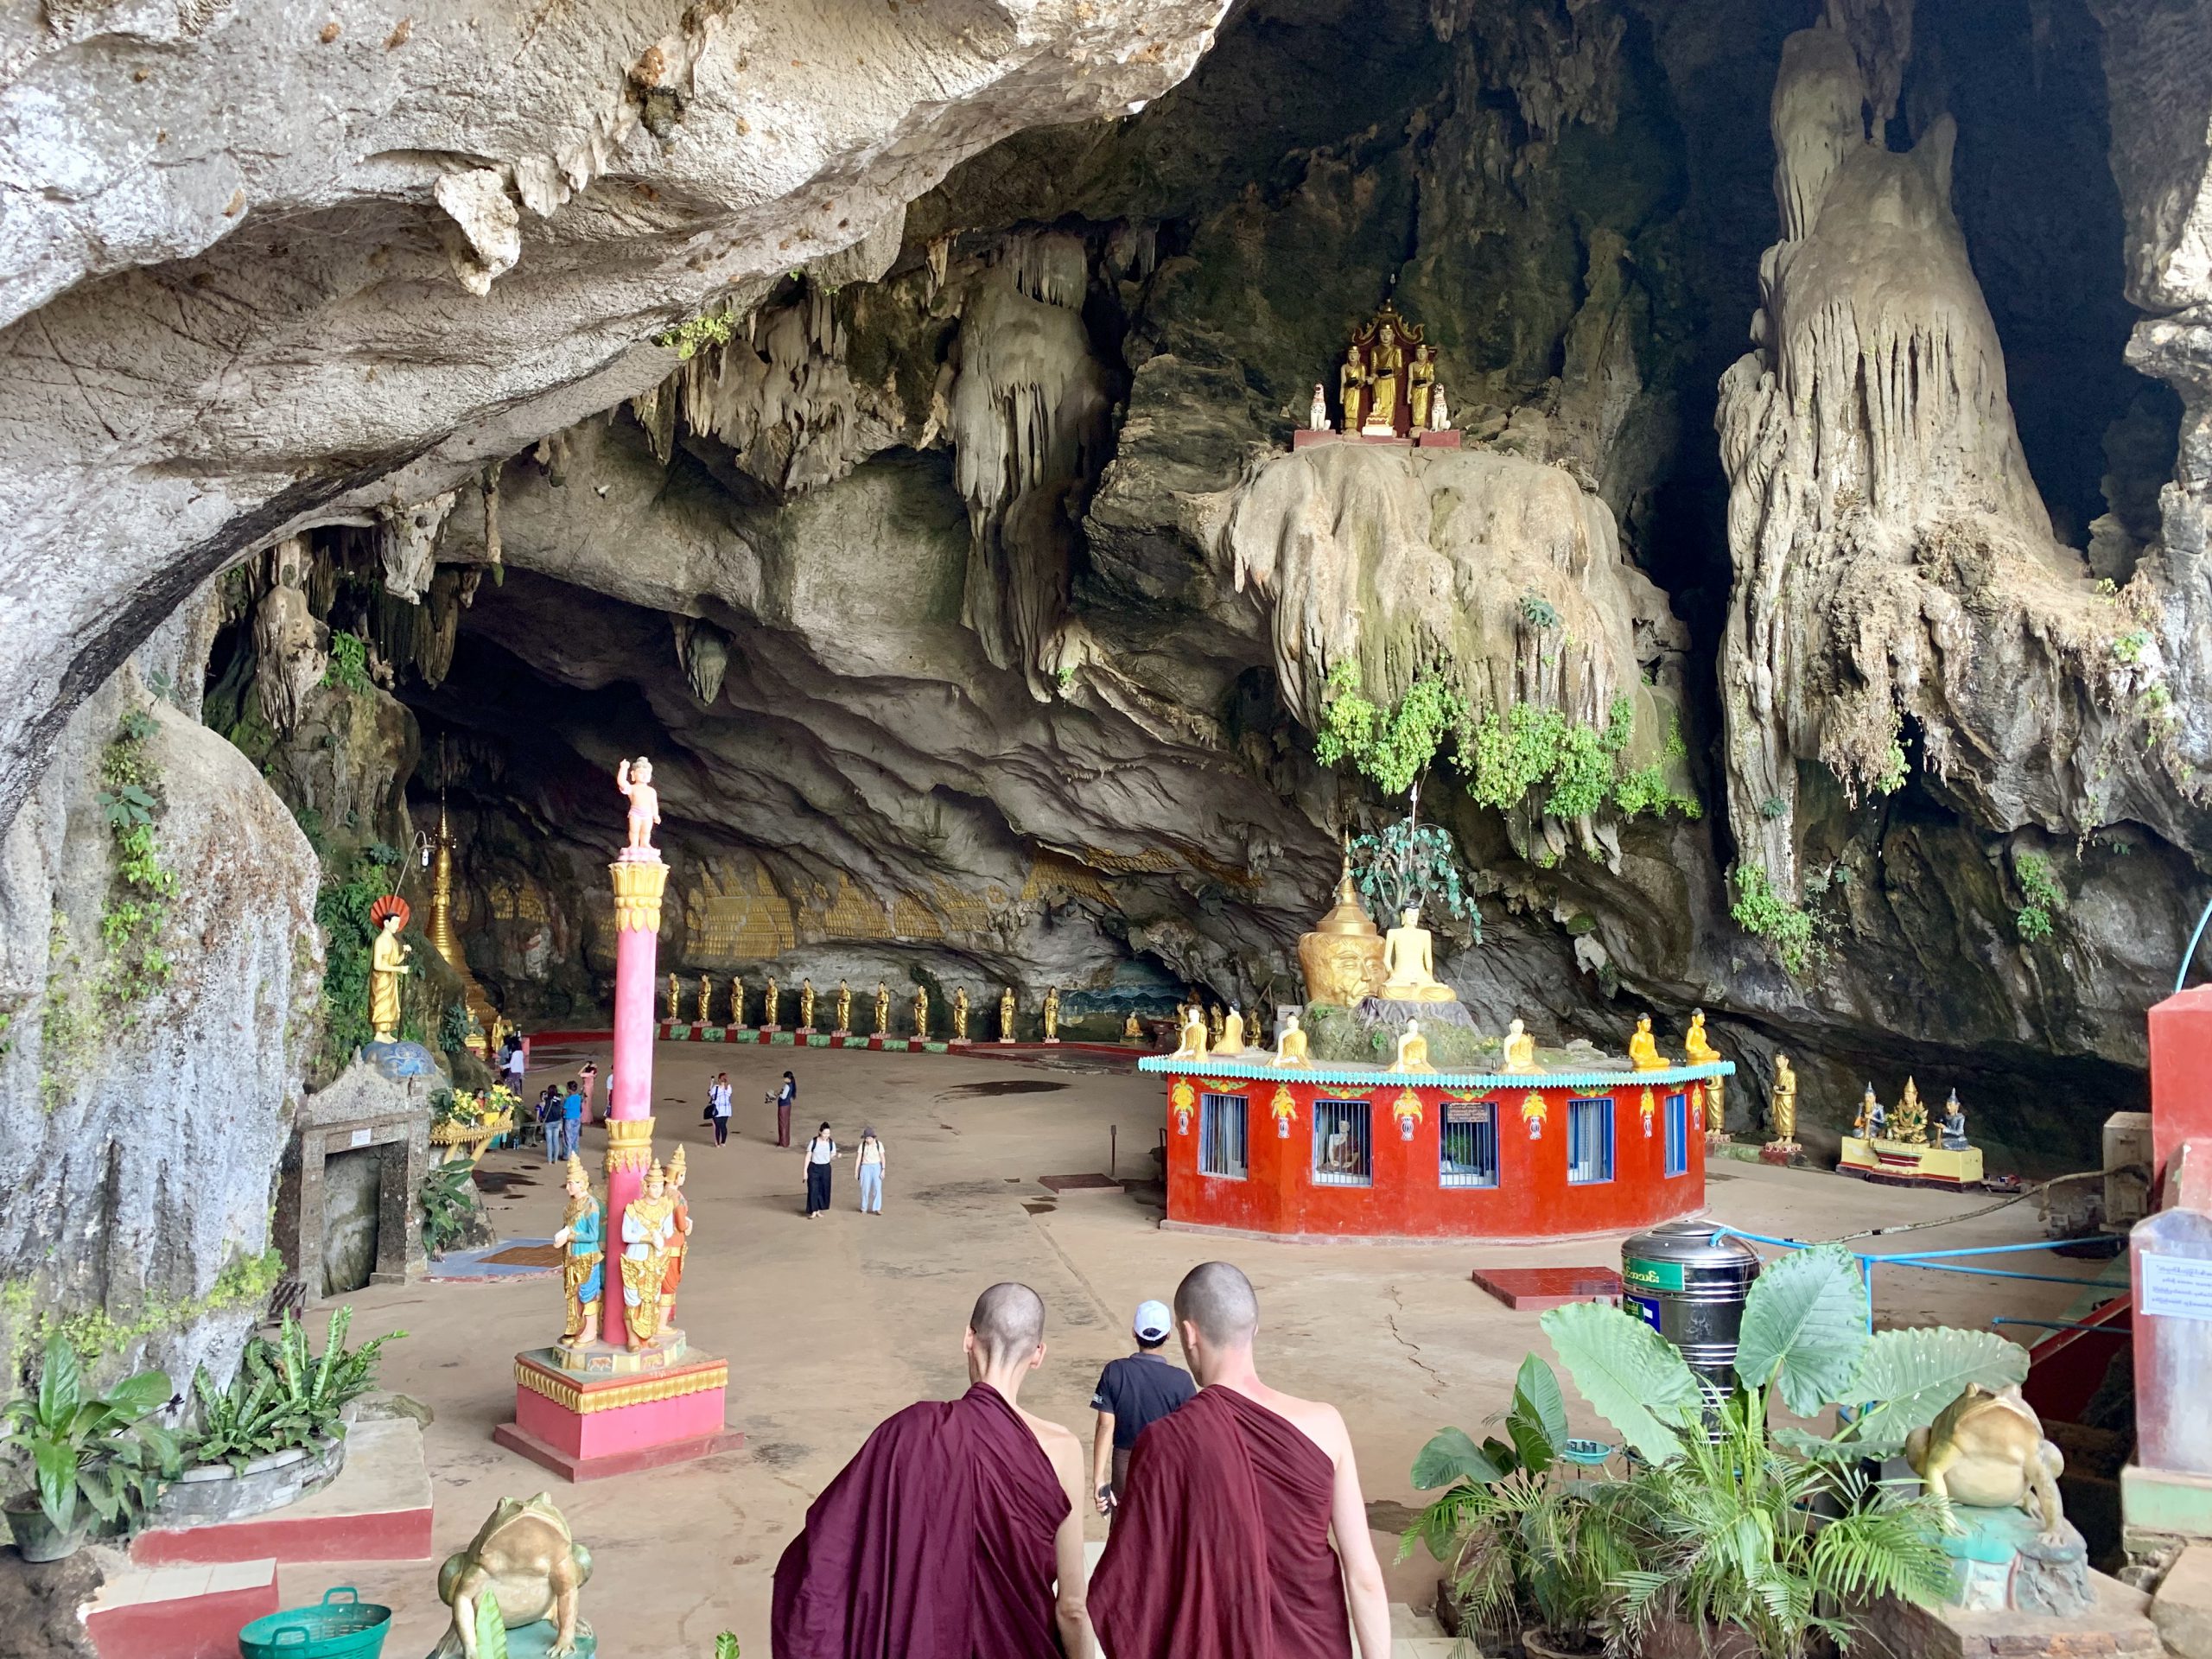 美國佛教徒Joah曾到緬甸禪修，記憶中的和平與美好被破壞，讓Joah感到十分痛苦。